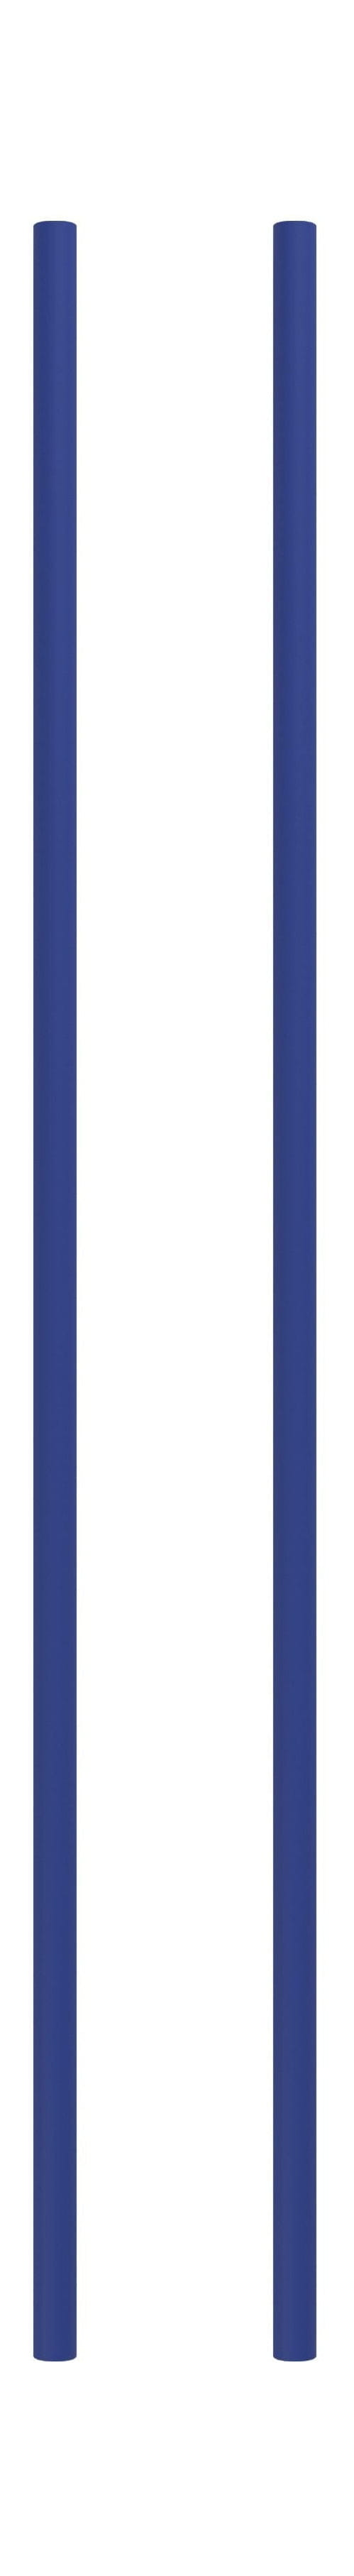 Moebe -Regalsystem/Wandregalbein 85 cm tiefblau, 2 Set von 2